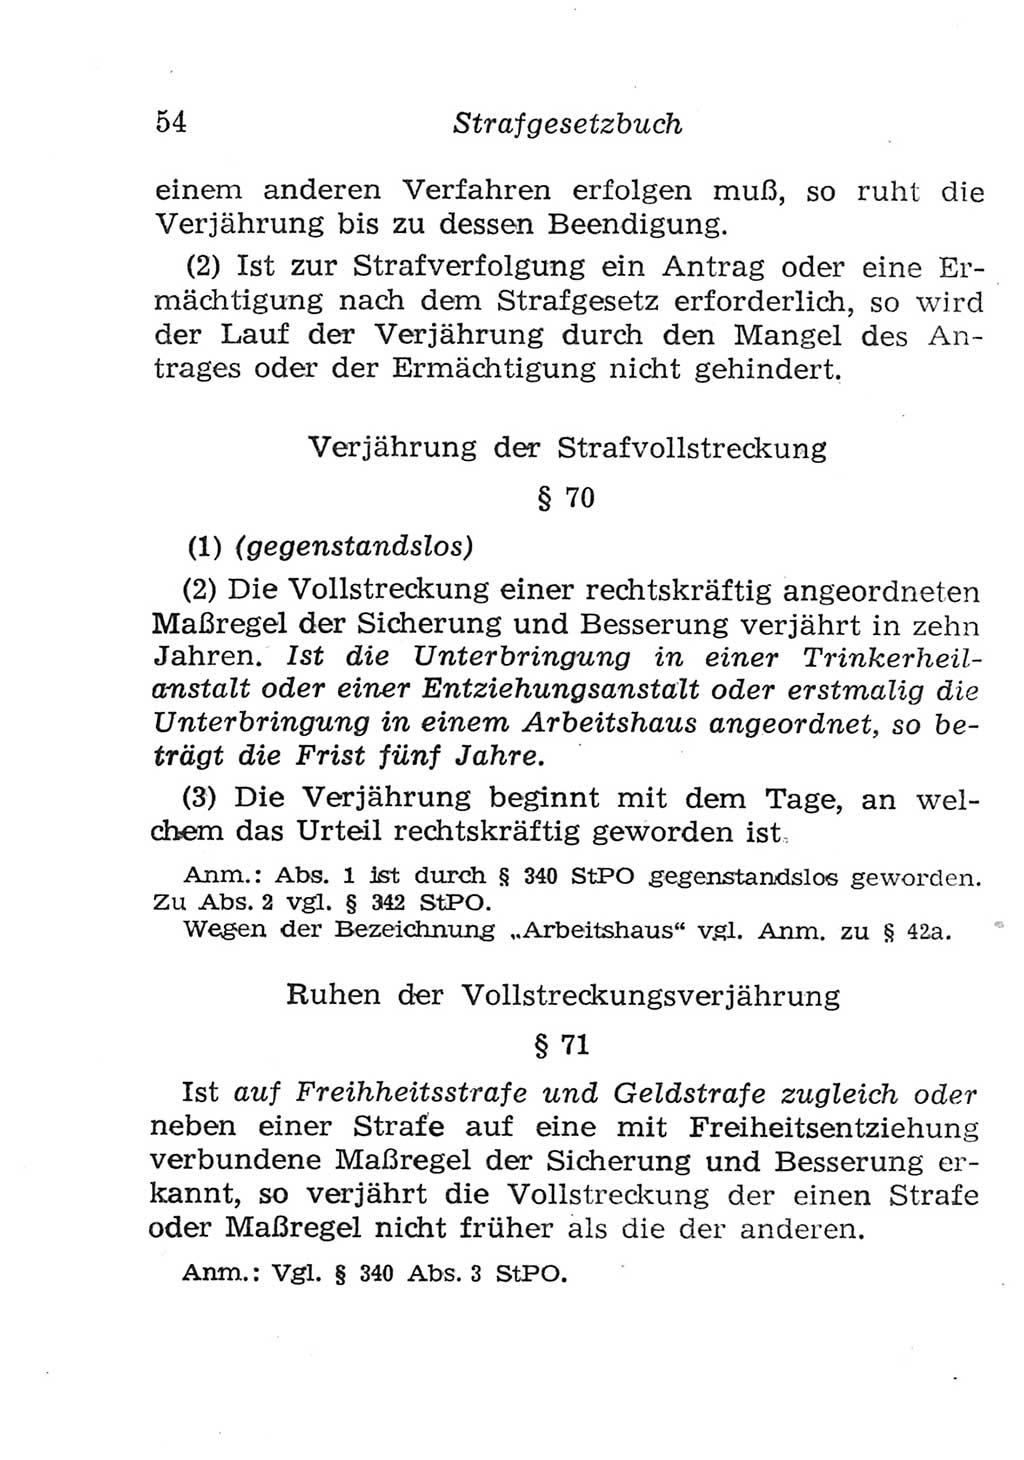 Strafgesetzbuch (StGB) und andere Strafgesetze [Deutsche Demokratische Republik (DDR)] 1957, Seite 54 (StGB Strafges. DDR 1957, S. 54)